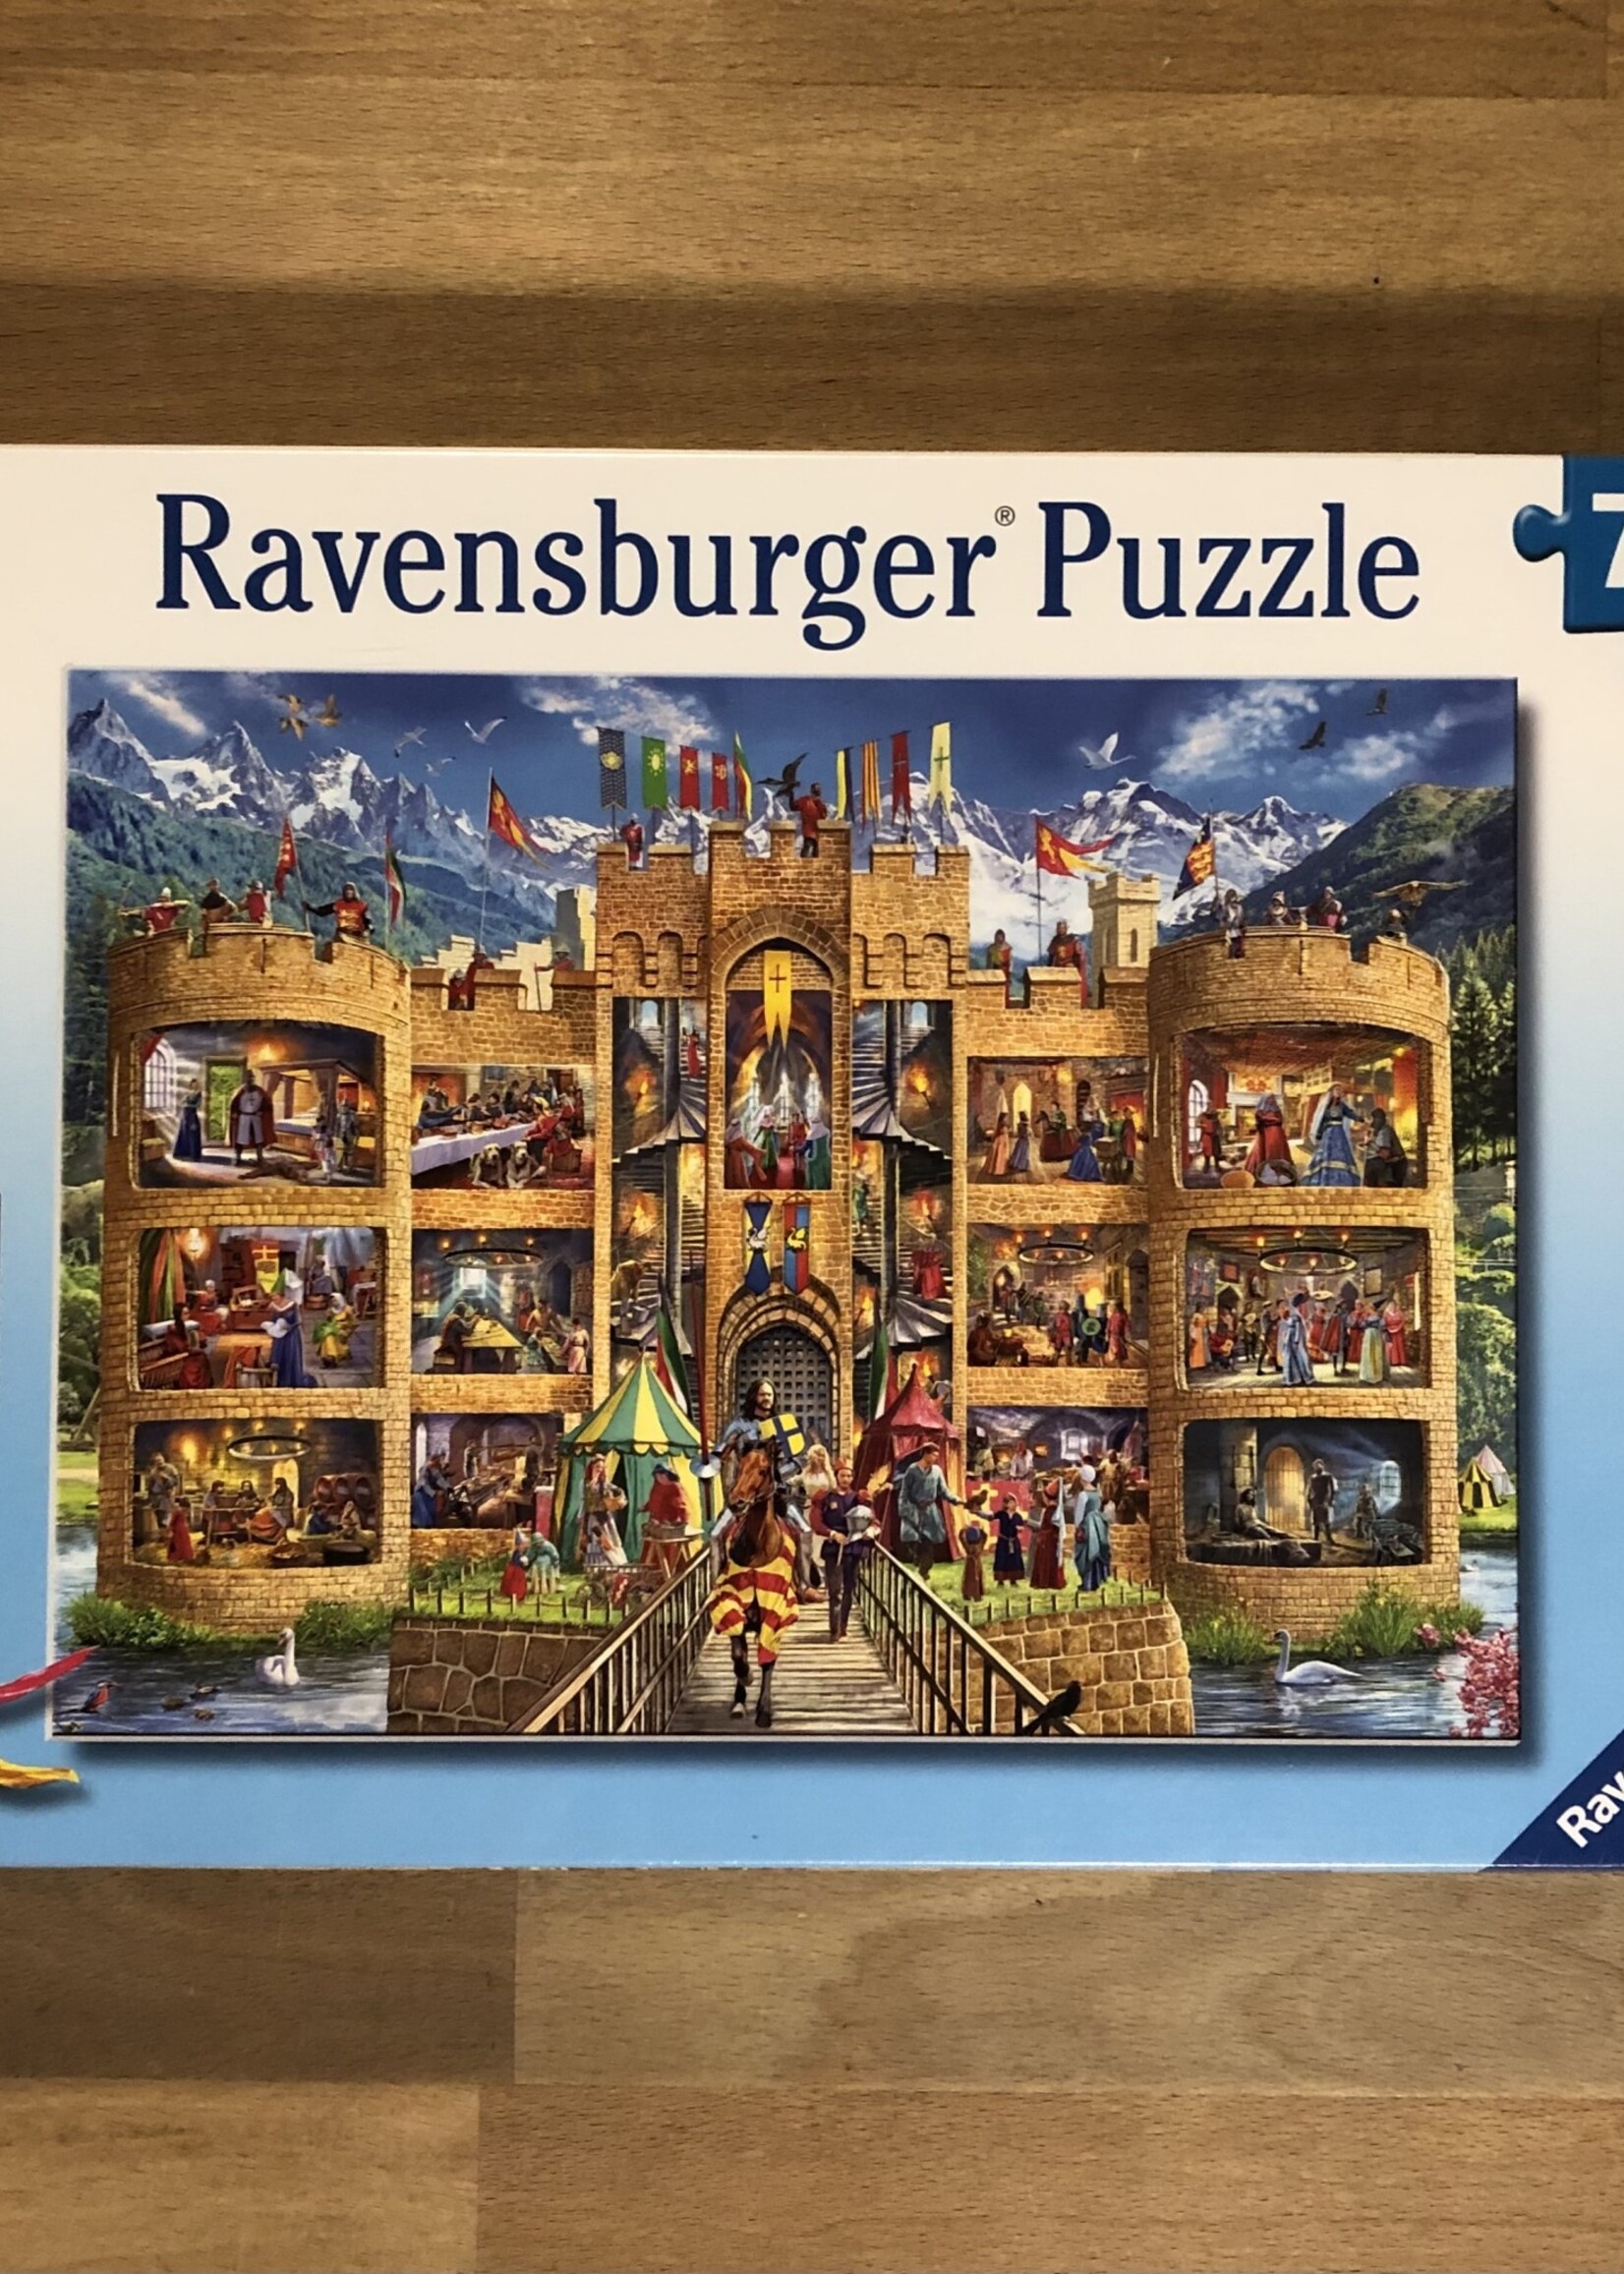 Ravensburger Puzzle - Cutaway Castle 150 Pc.